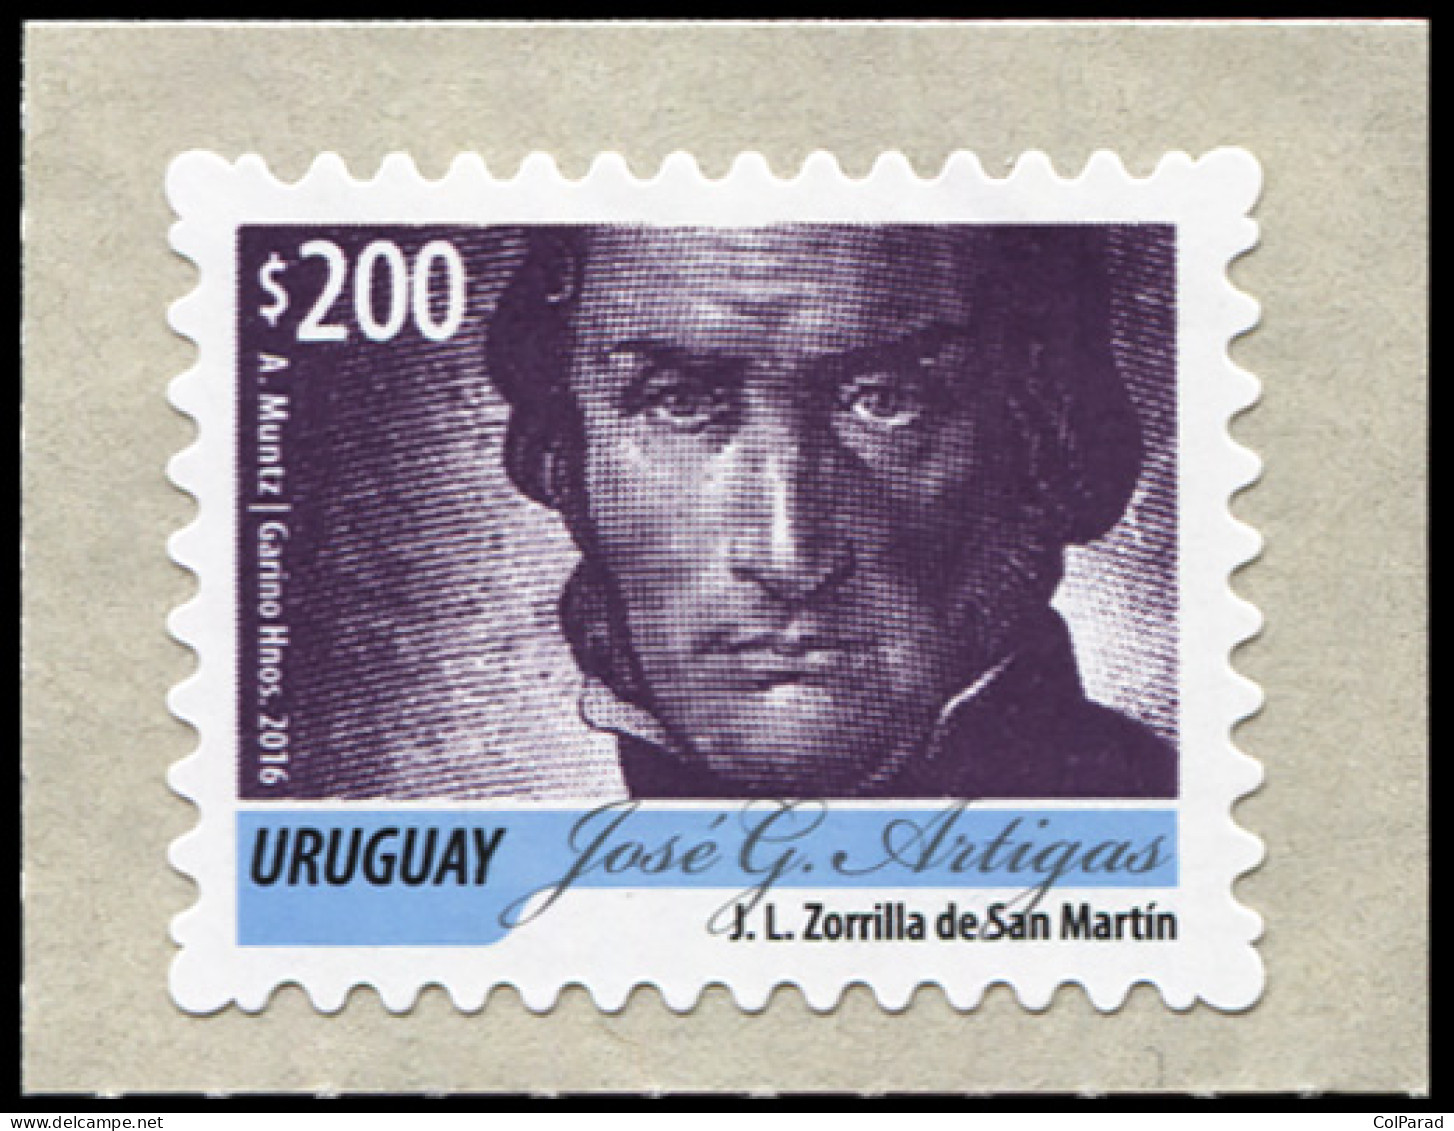 URUGUAY - 2016 - STAMP MNH ** - José Gervasio Artigas - Purple - Uruguay